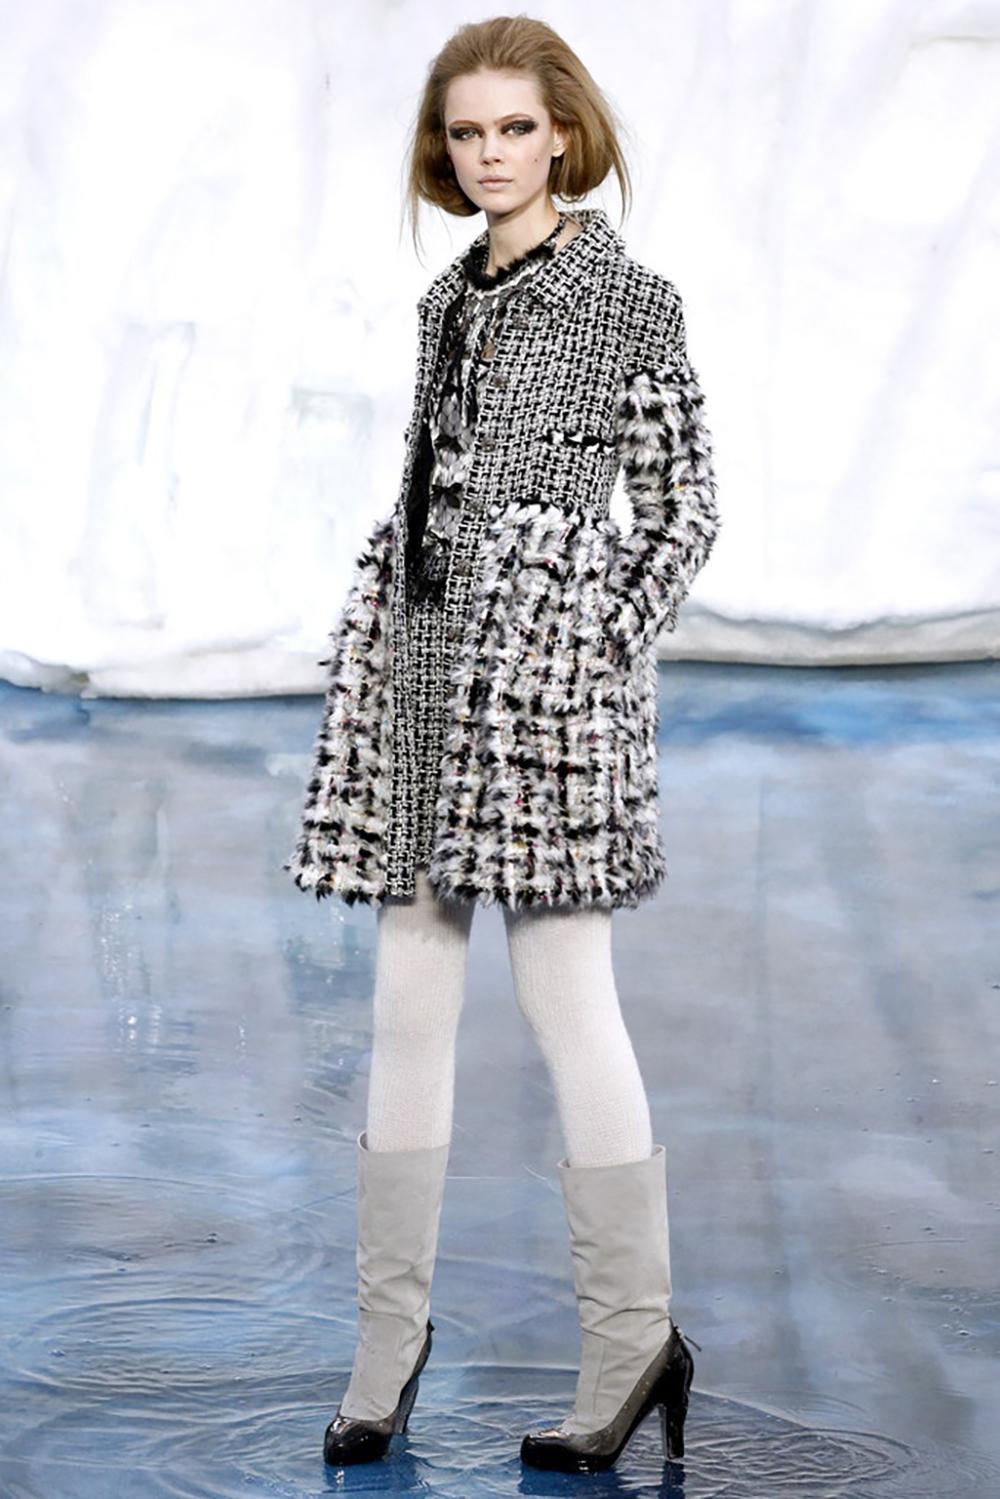 Super selten, Sammler Chanel flauschige Fantasie Tweed-Mantel aus ARCTIC ICE Collection'S von Herrn Karl Lagerfeld. Der Einzelhandelspreis betrug ca. 12,000$
Größenbezeichnung 40 fr. Der Zustand ist tadellos. 
- CC-Logo-Juwelen Gripoix-Tasten
-